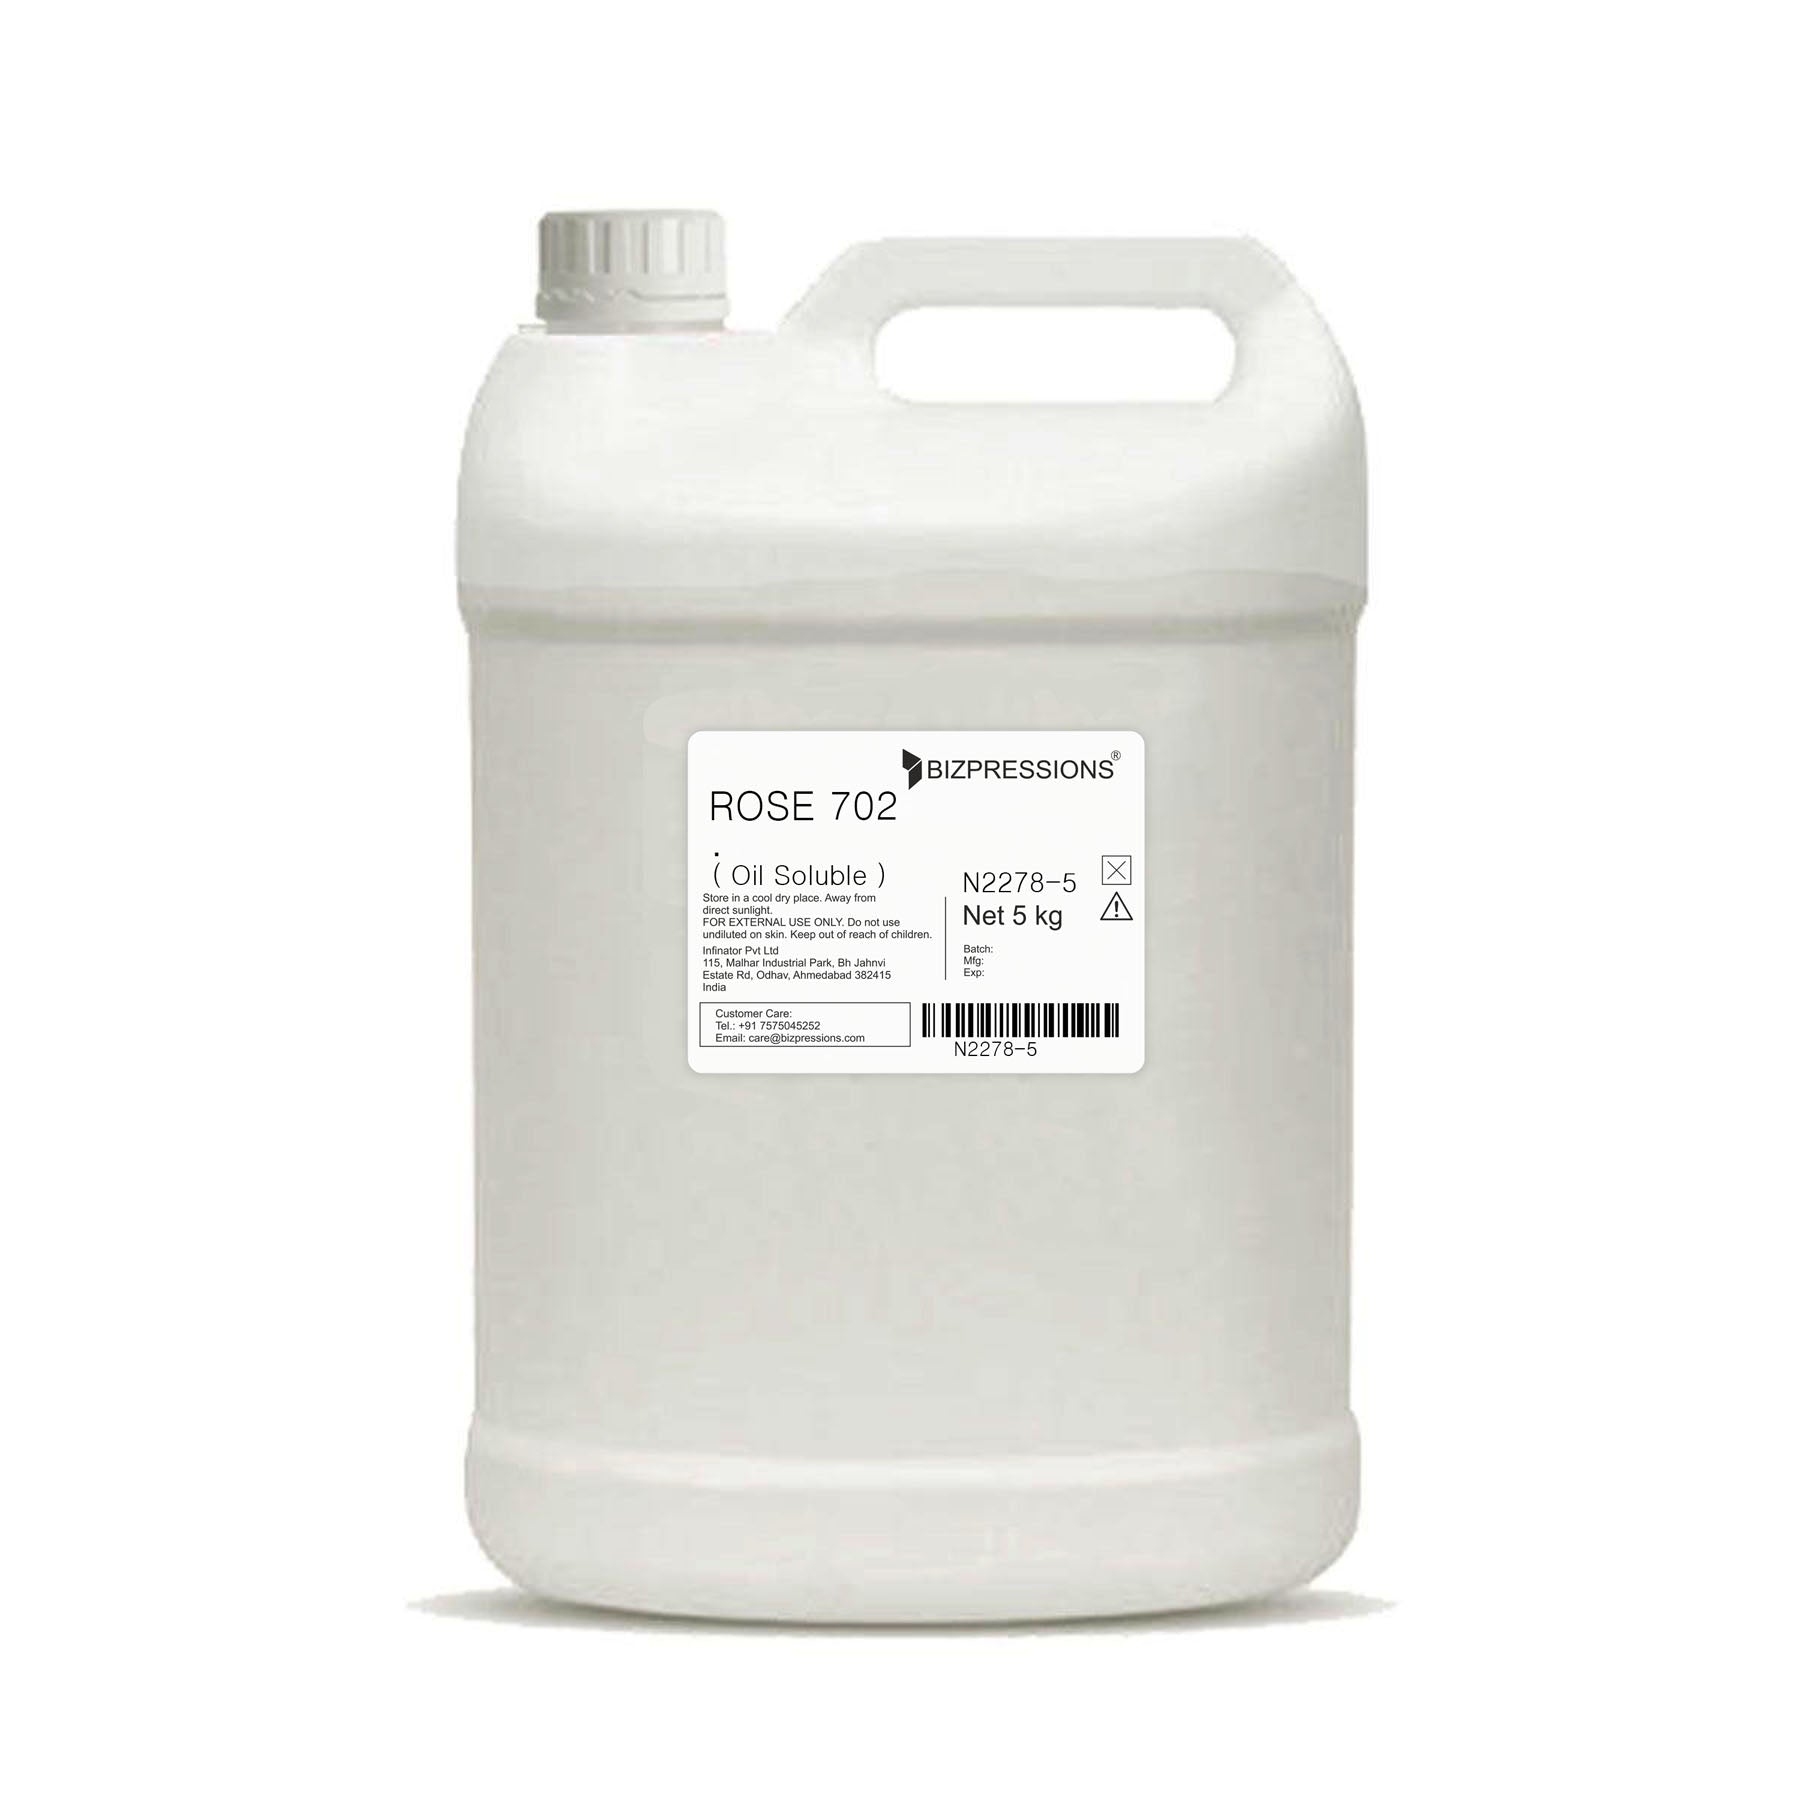 ROSE 702 - Fragrance ( Oil Soluble ) - 5 kg